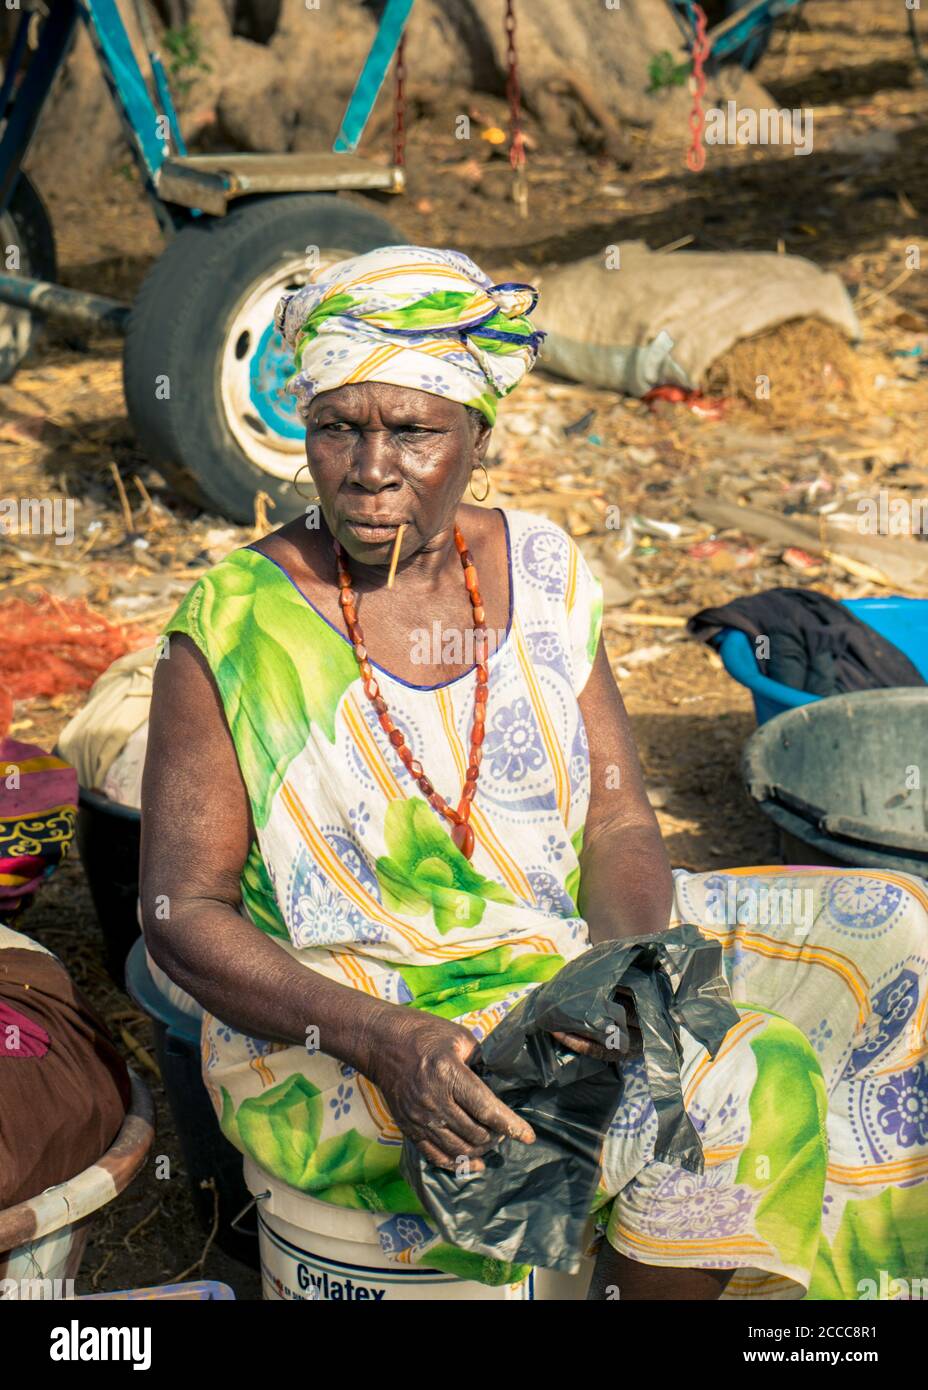 Femme sur le marché assise sur un conteneur en plastique attendant des clients au Sénégal, Afrique - Photographie: Iris de Reus Banque D'Images